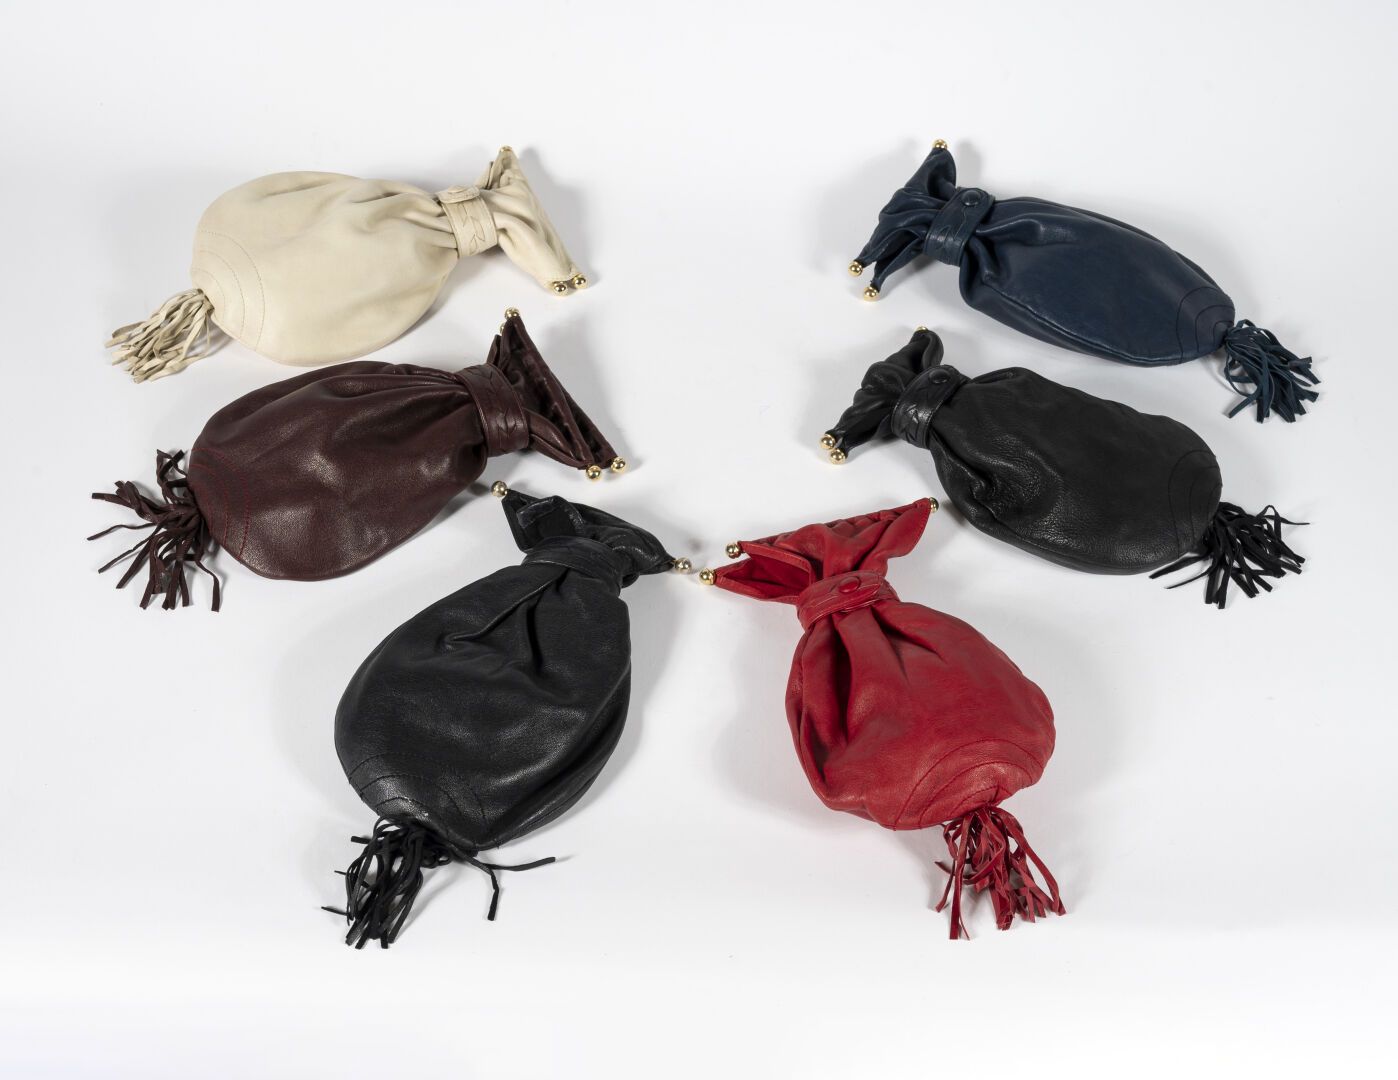 Null Sei piccole borse in pelle nei colori nero, rosso, blu, crema e bordeaux,

&hellip;